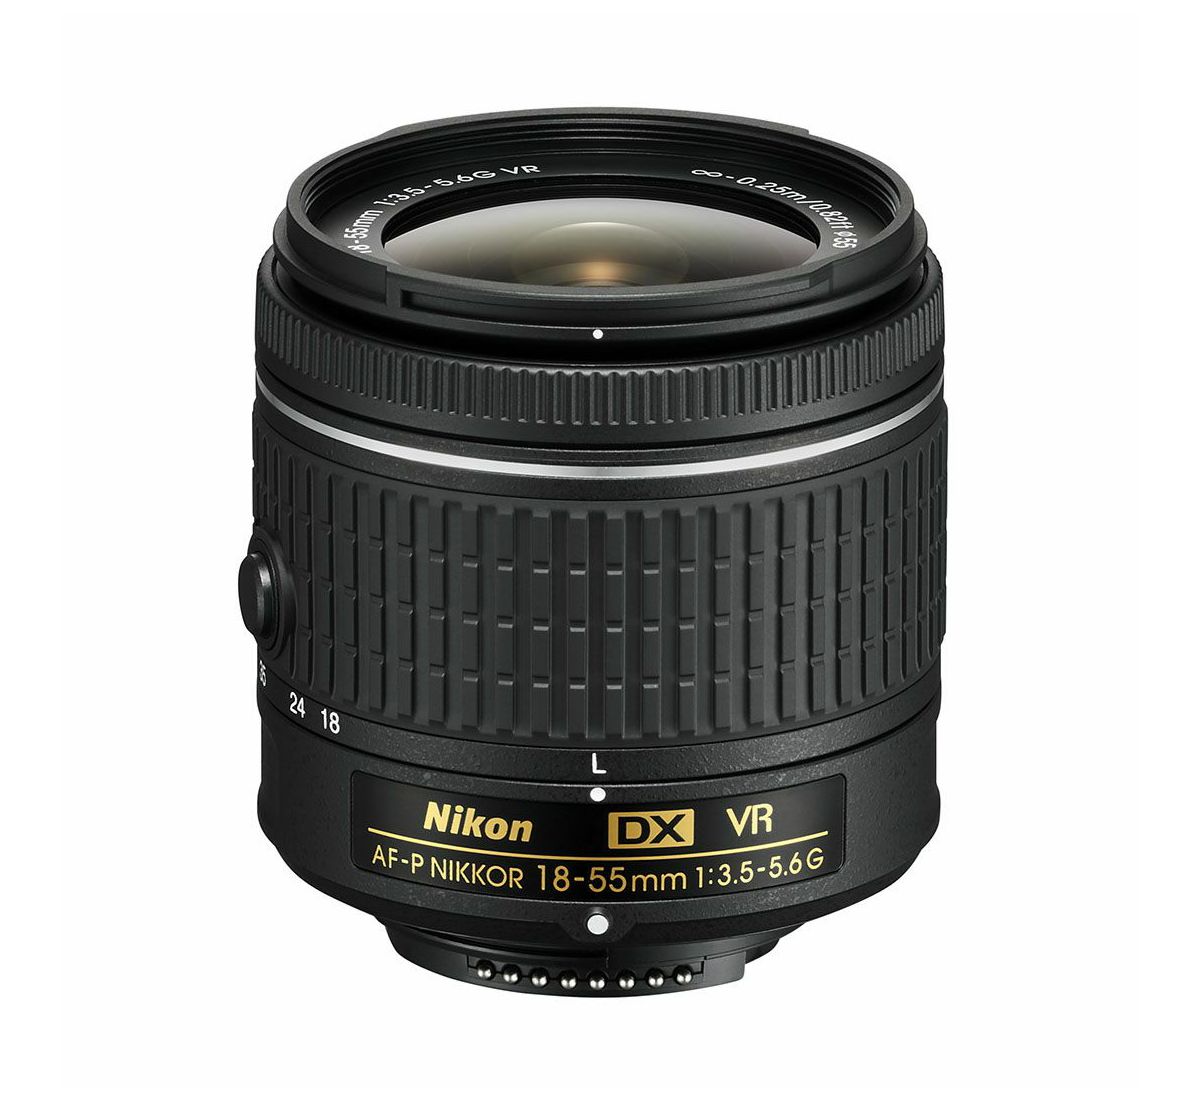 Nikon AF-P 18-55mm f/3.5-5.6G VR DX standardni objektiv auto focus Nikkor 18-55 f/3.5-5.6 F3.5-5.6 zoom lens (JAA826DA)